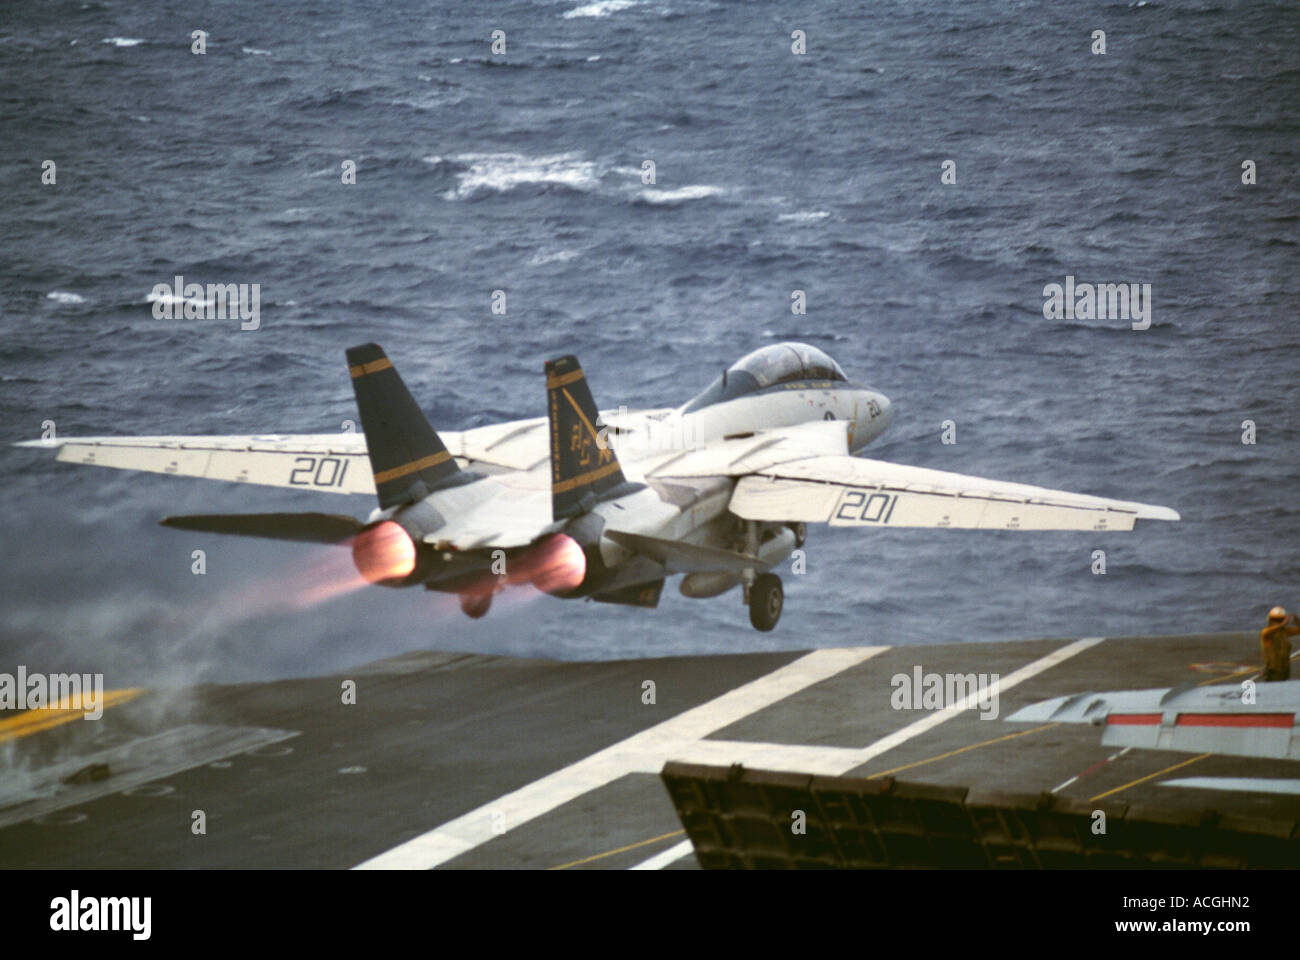 Les officiers de pont de vol lancer un U.S. Navy F/A-18C Hornet pendant les opérations de vol à partir du pont de l'USS John F. Kennedy (CV-67) Banque D'Images